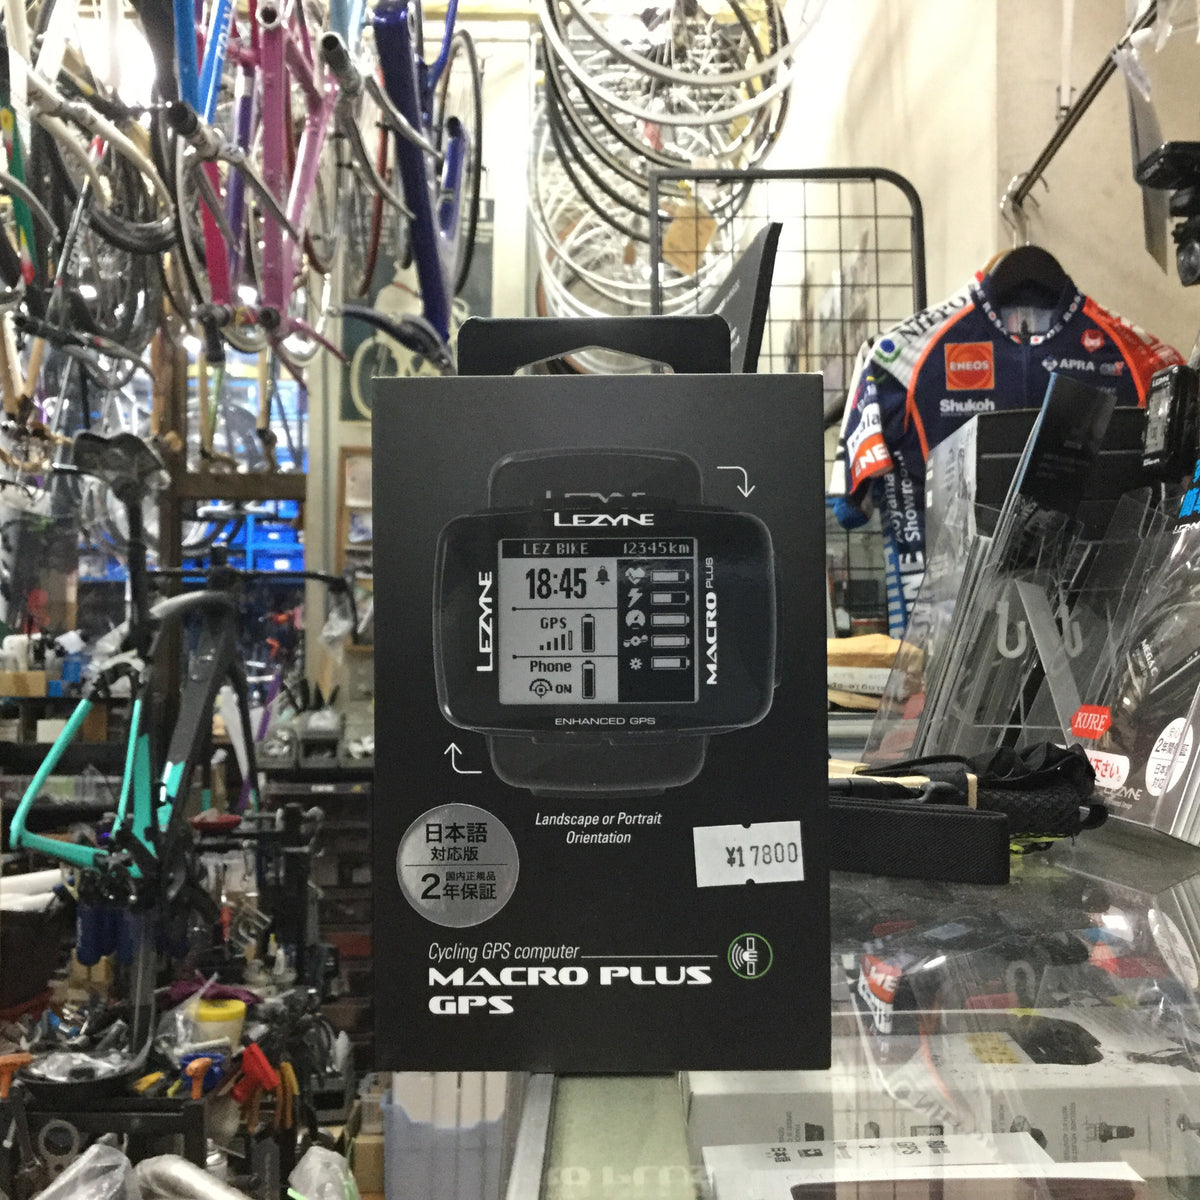 MACRO PLUS GPS – Cycling Shop ヤマネ - 高知の自転車専門店